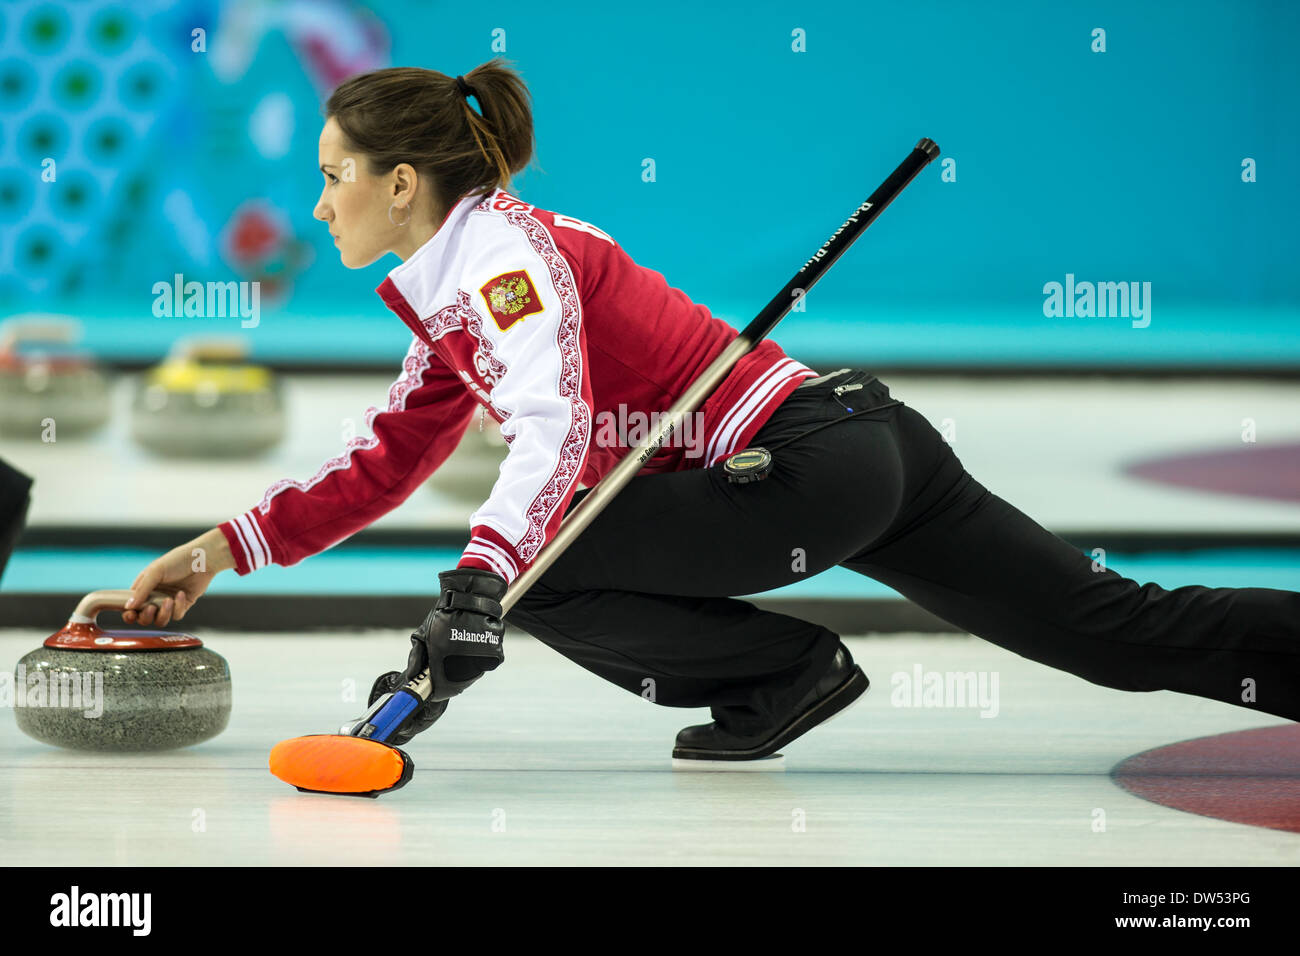 Frauen Curling Wettbewerb bei den Olympischen Winterspiele Sotschi 2014 Stockfoto